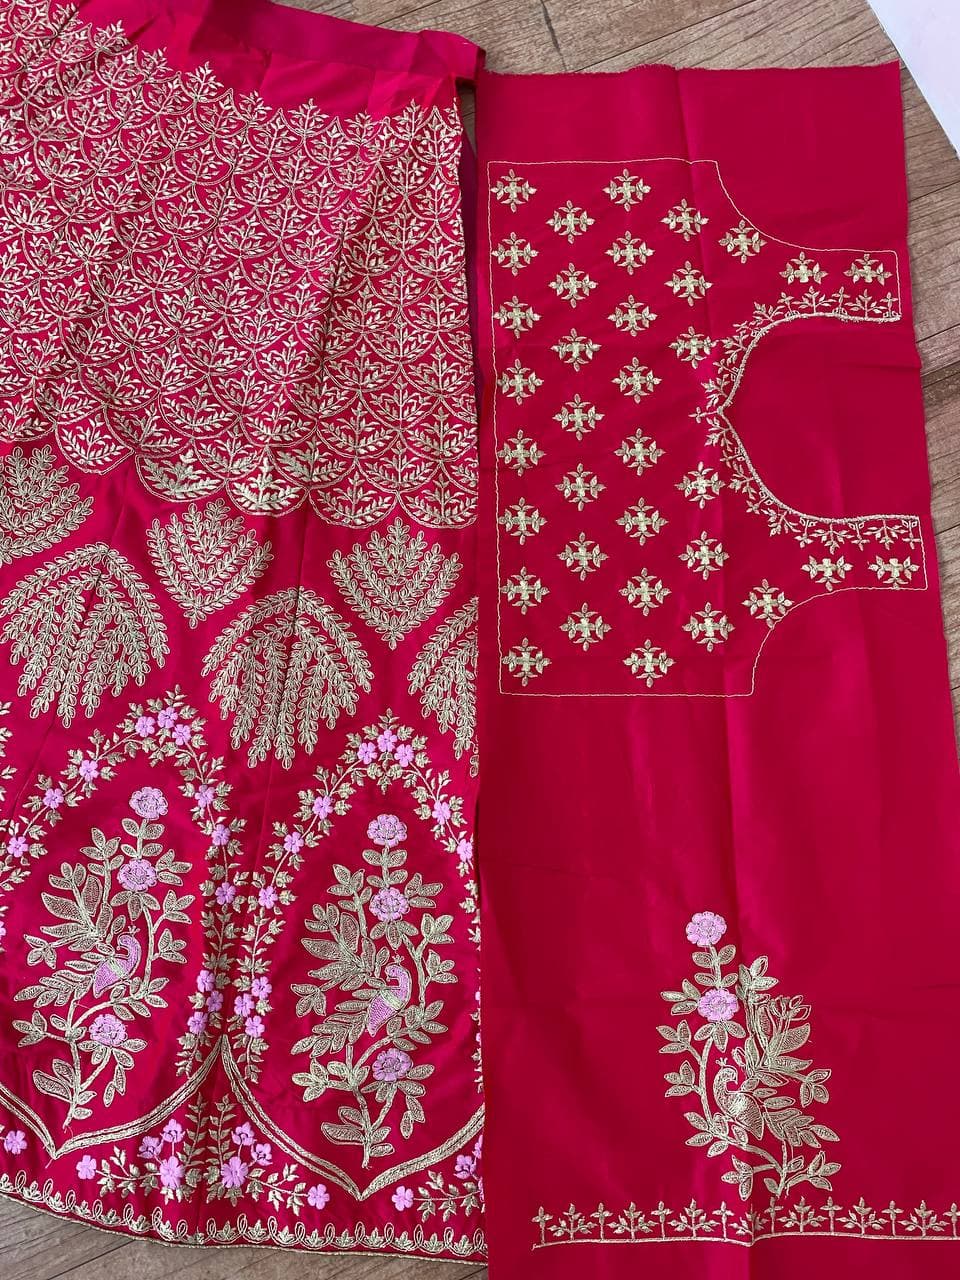 Rani Pink Lehenga Choli In Malai Satin With Cording Work